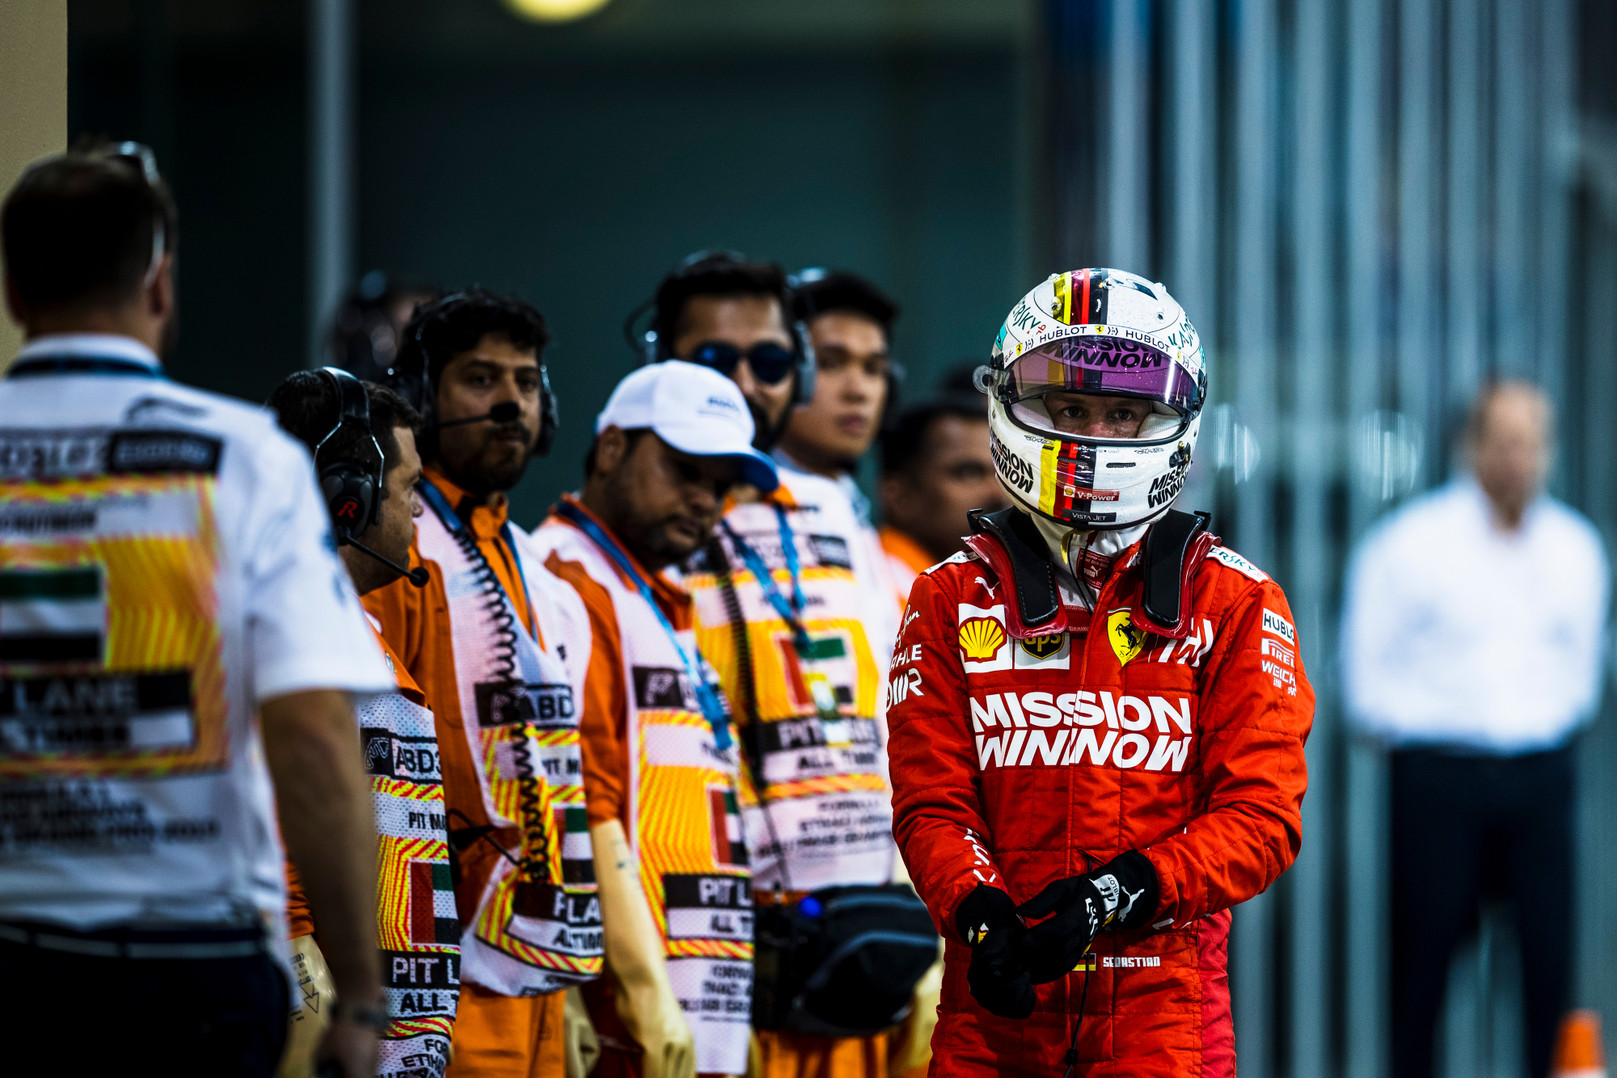 Ką S. Vetteliui žada 2020 metai?